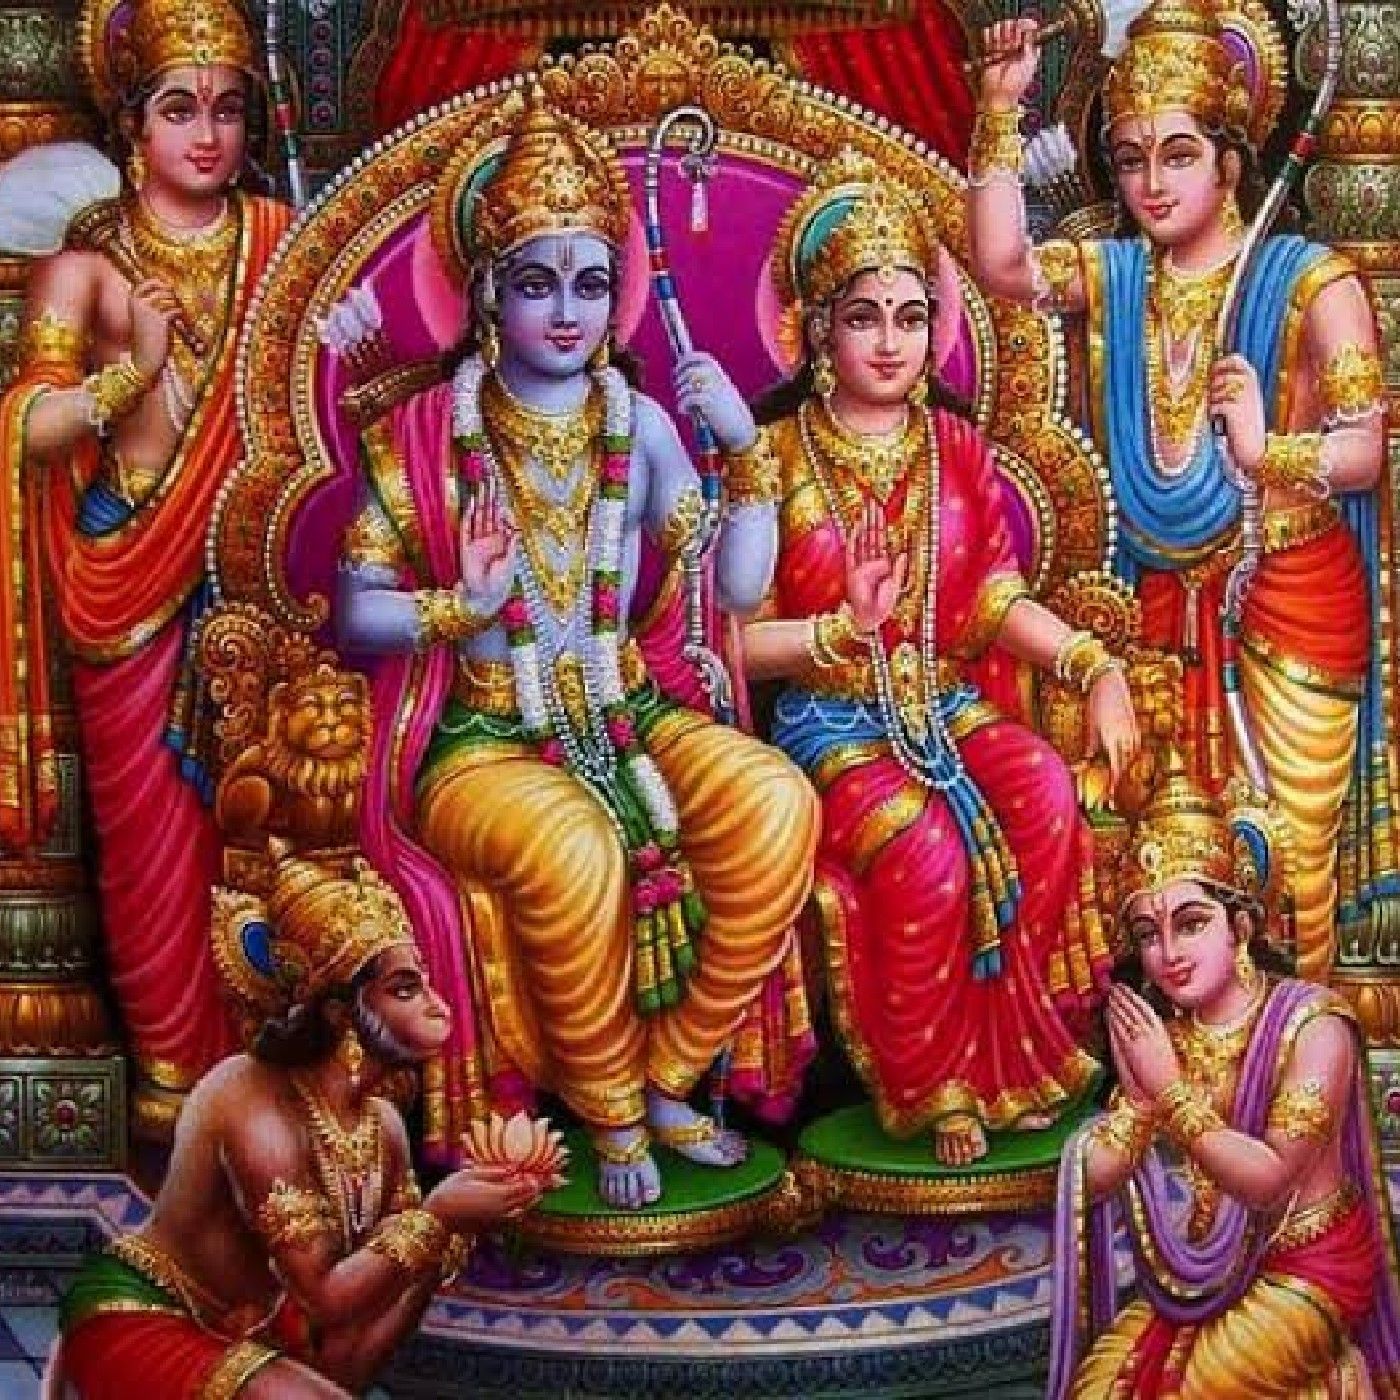 4. Lord Rama's omnipotence